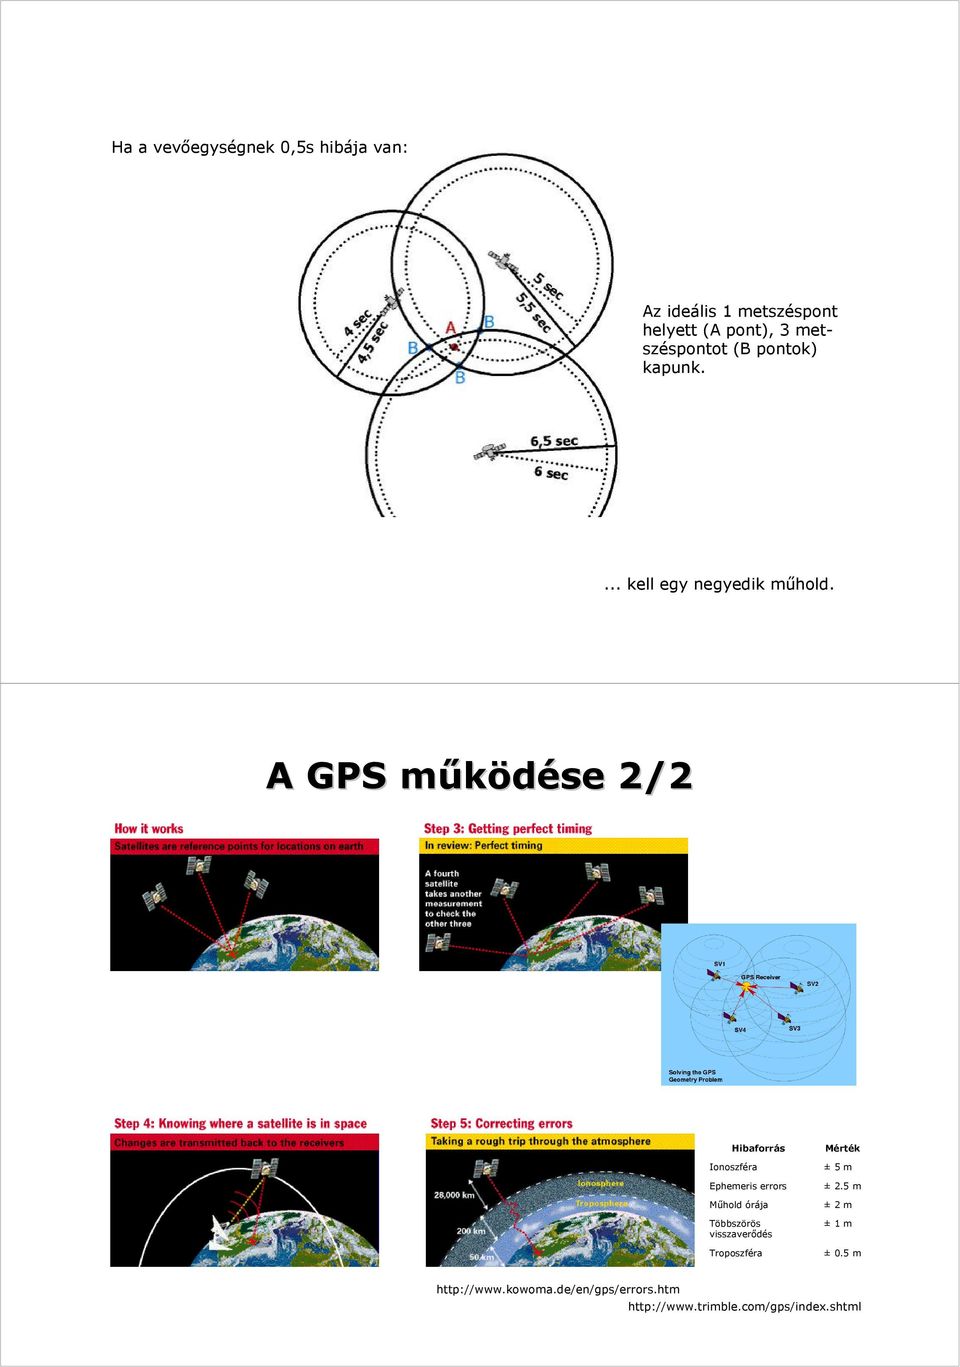 A GPS működése m 2/2 Hibaforrás Ionoszféra Ephemeris errors Műhold órája Többszörös